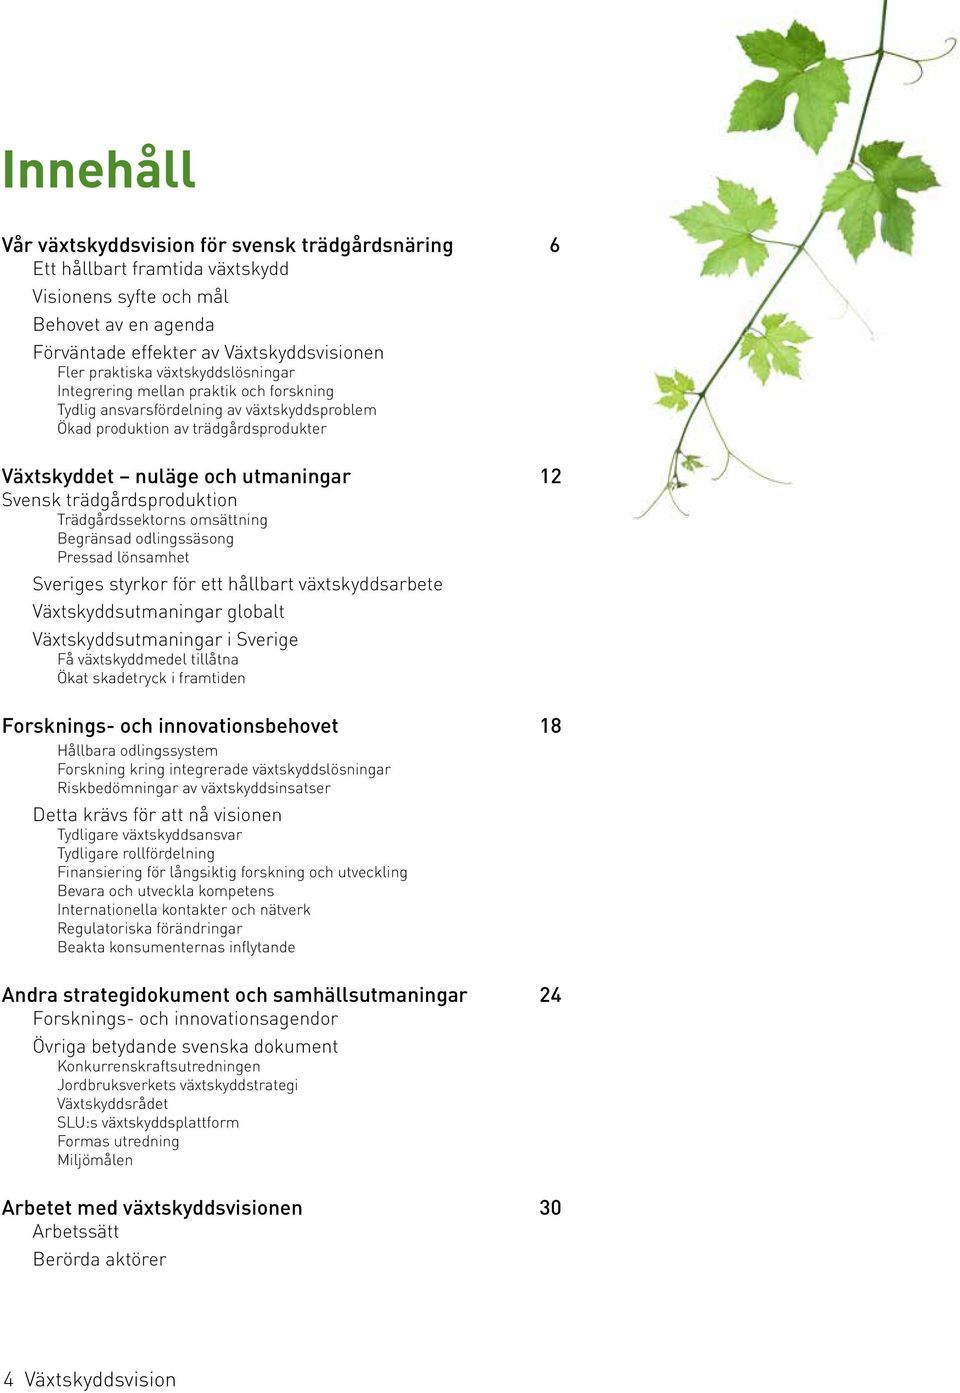 trädgårdsproduktion Trädgårdssektorns omsättning Begränsad odlingssäsong Pressad lönsamhet Sveriges styrkor för ett hållbart växtskyddsarbete Växtskyddsutmaningar globalt Växtskyddsutmaningar i